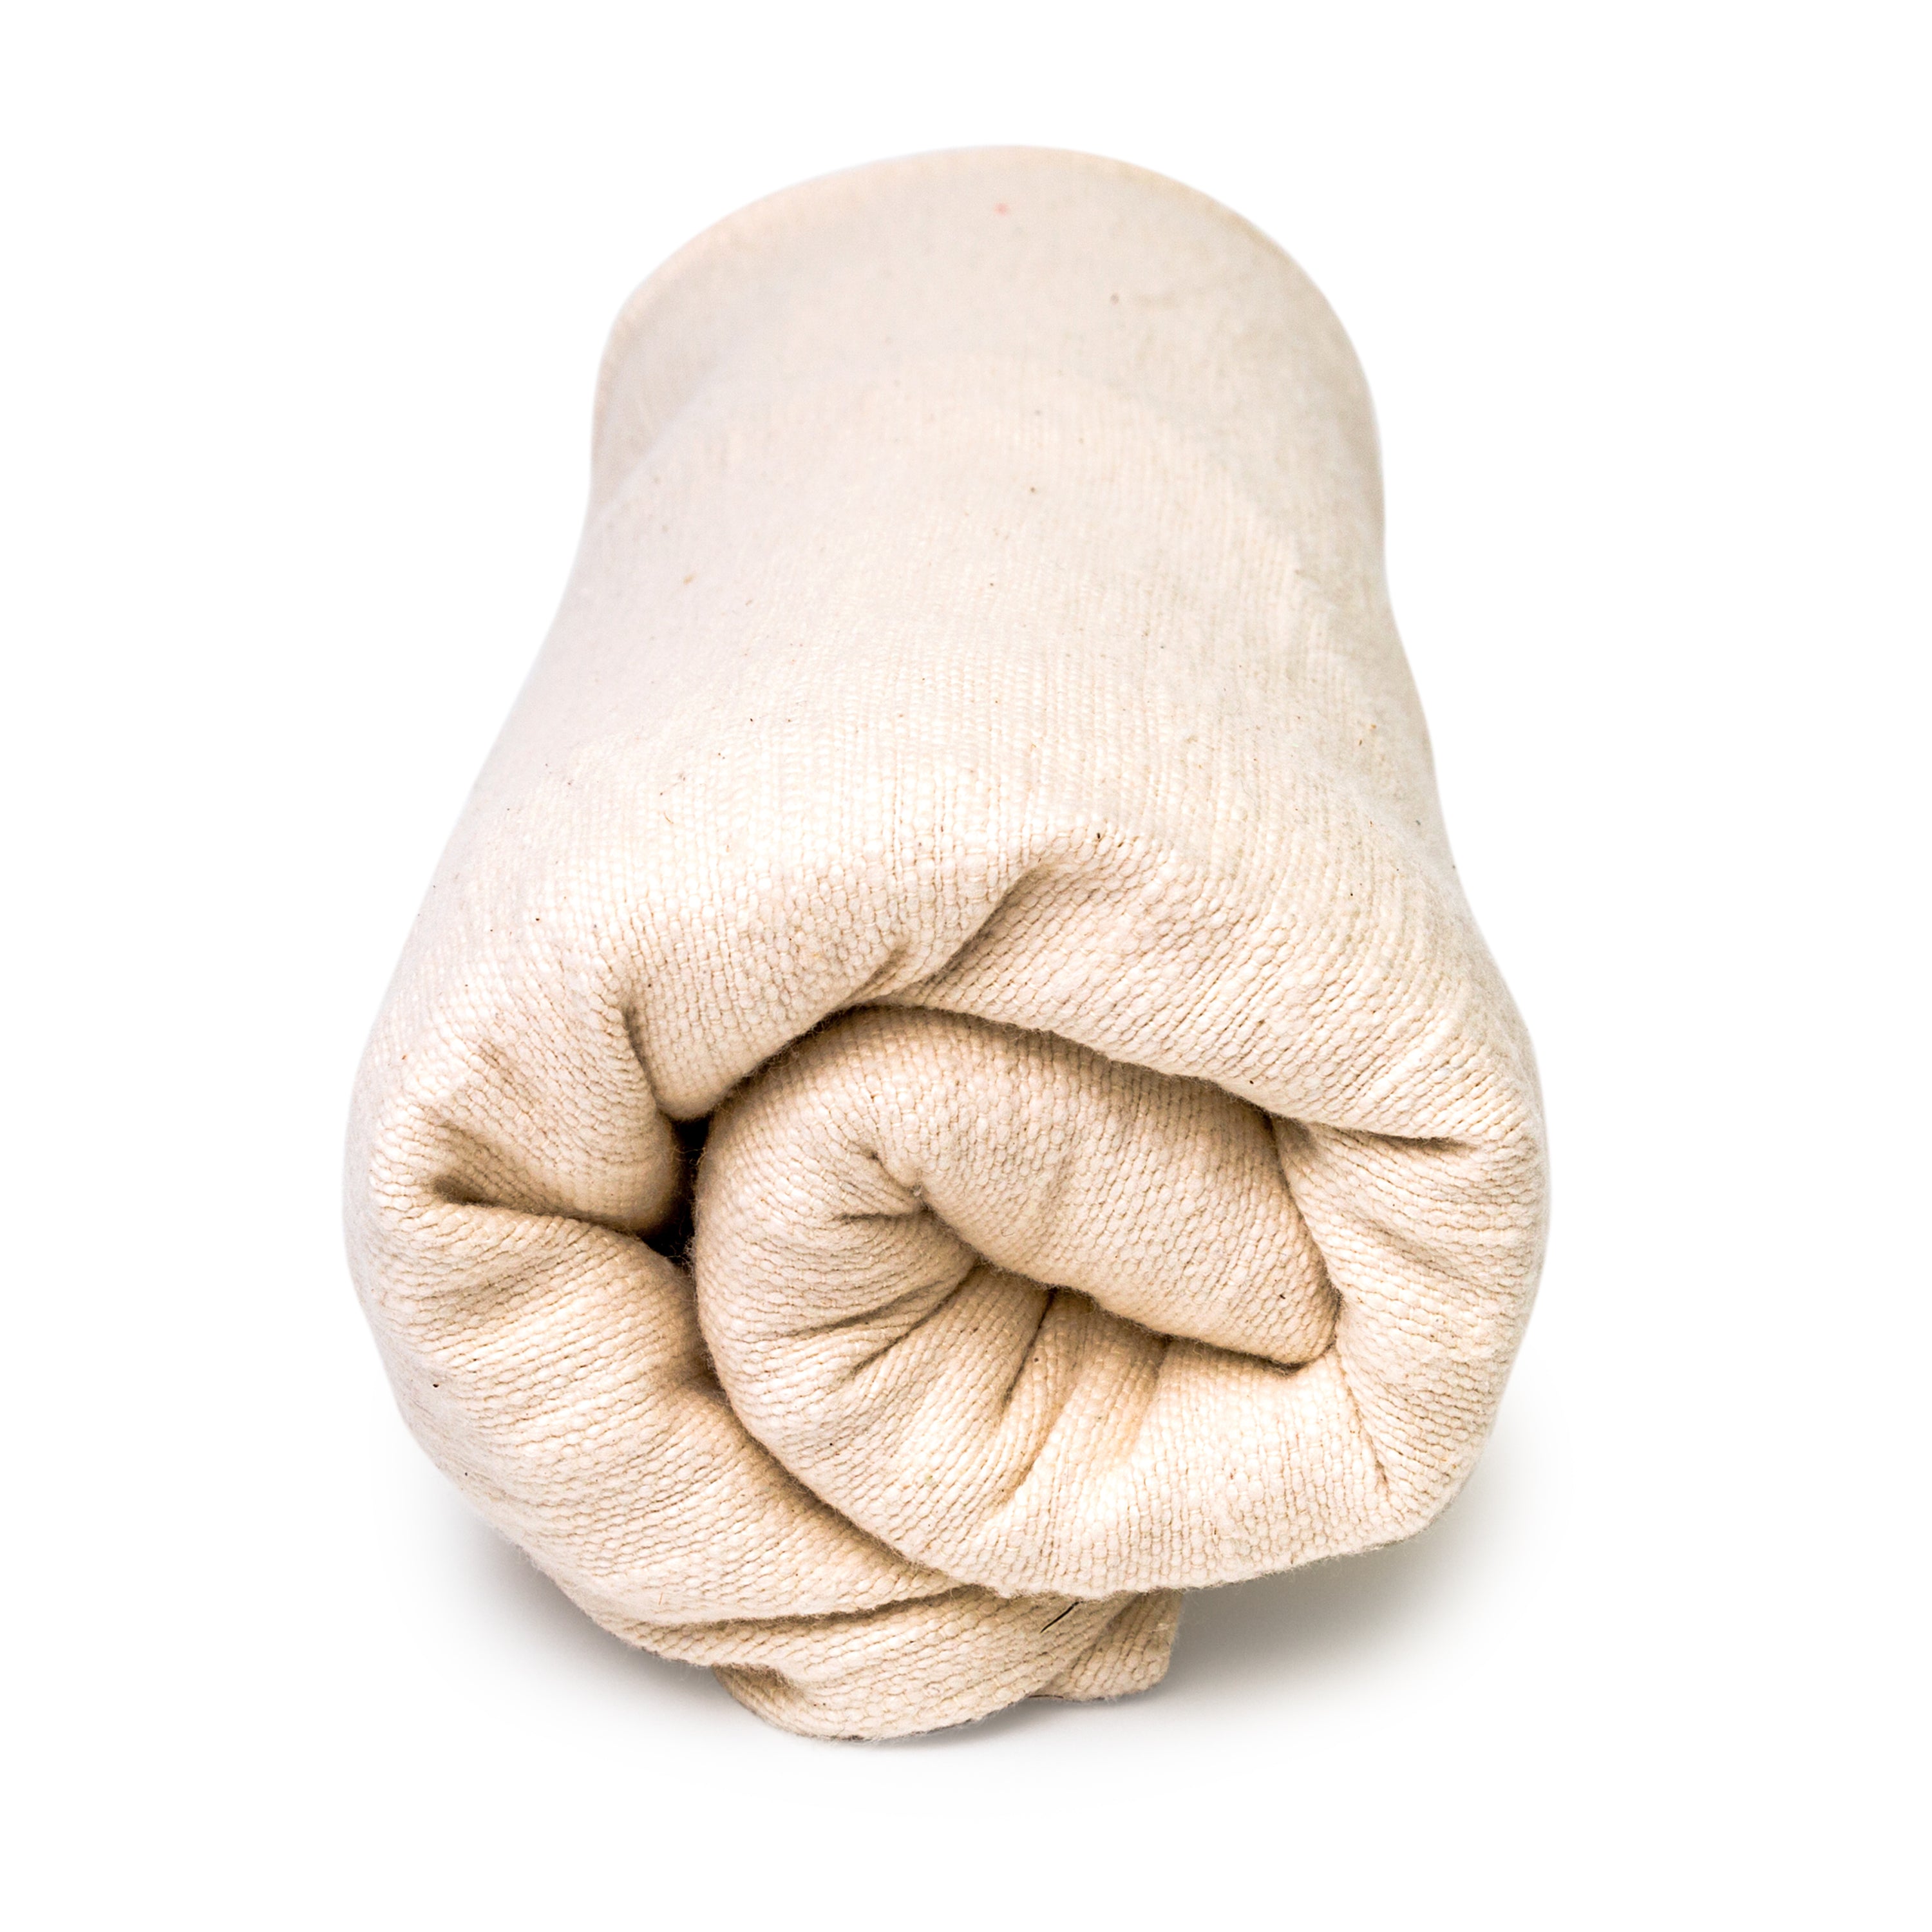 Image of 100% Cotton Super Soft Yoga Meditation Blanket